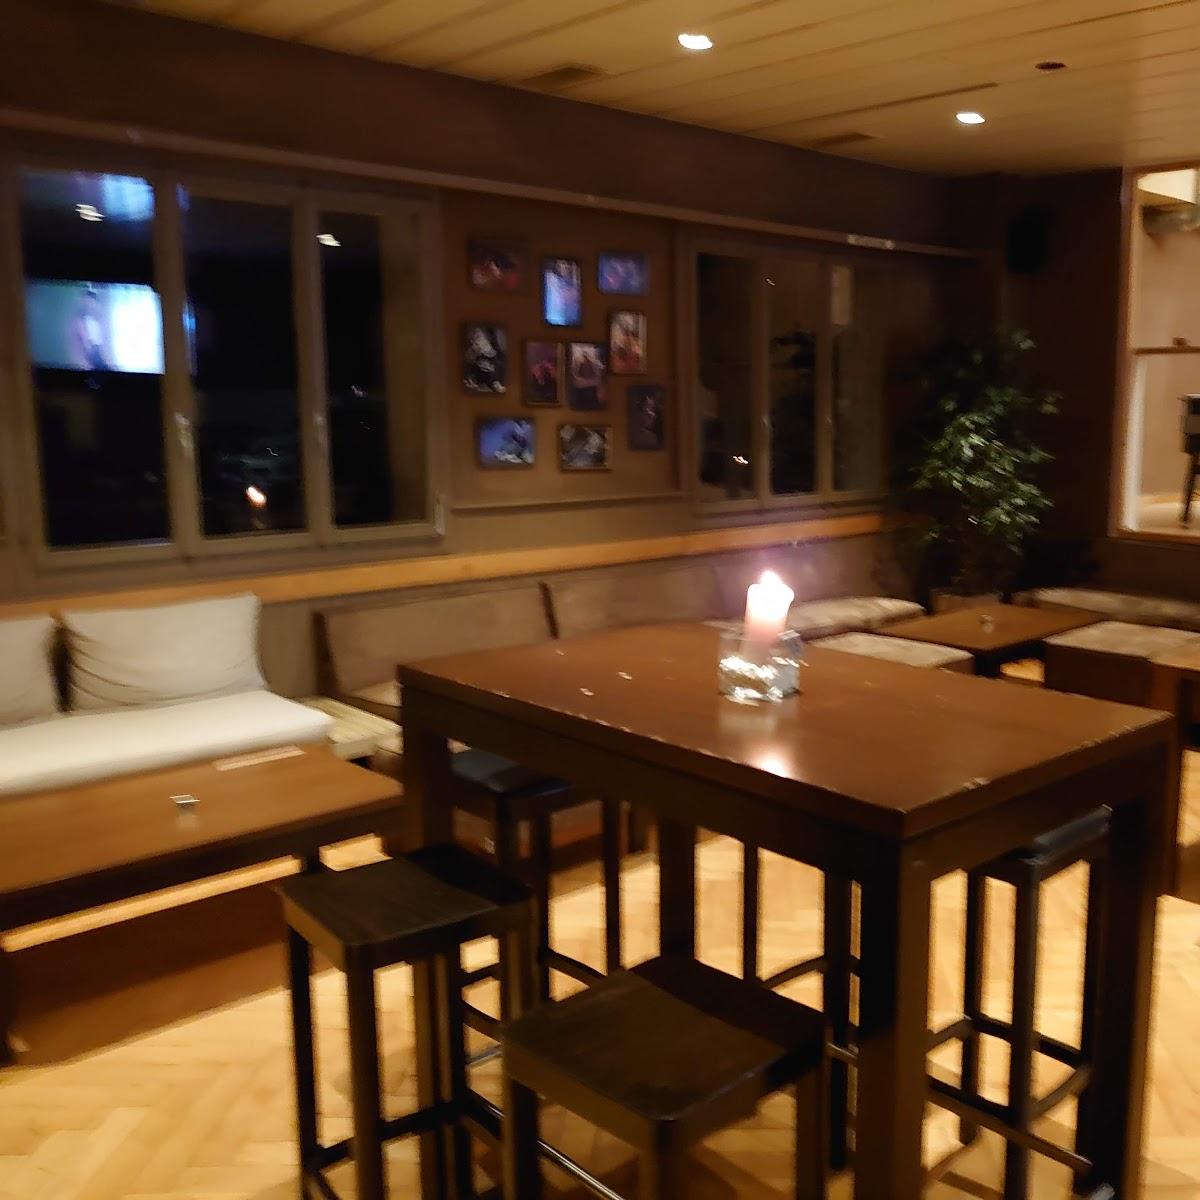 Restaurant "Spunte - Restaurant, Lounge & Sportbar" in Seedorf